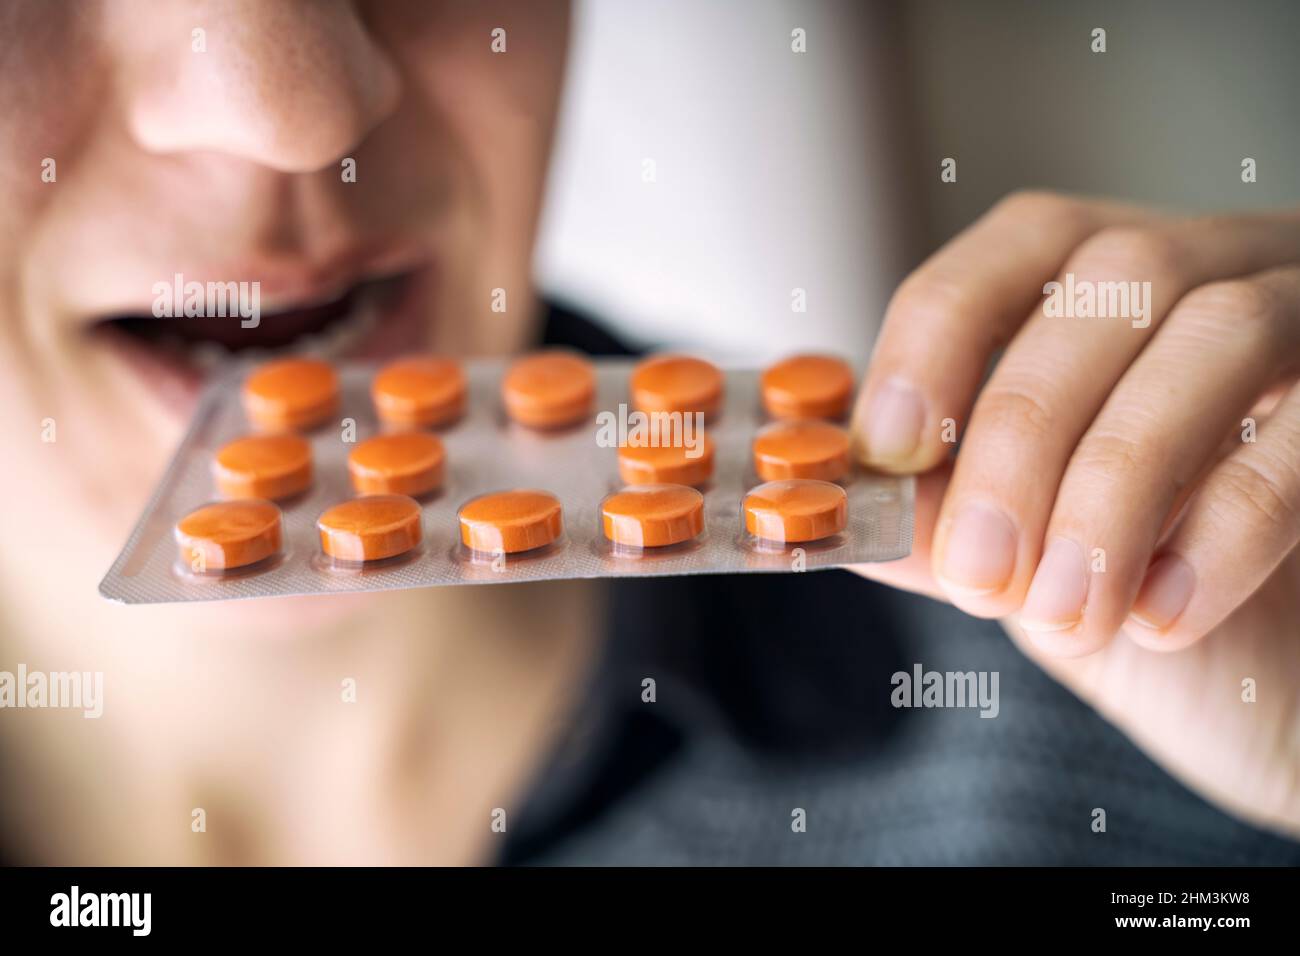 Comer una tableta de píldoras de medicina, adicción a las drogas Foto de stock